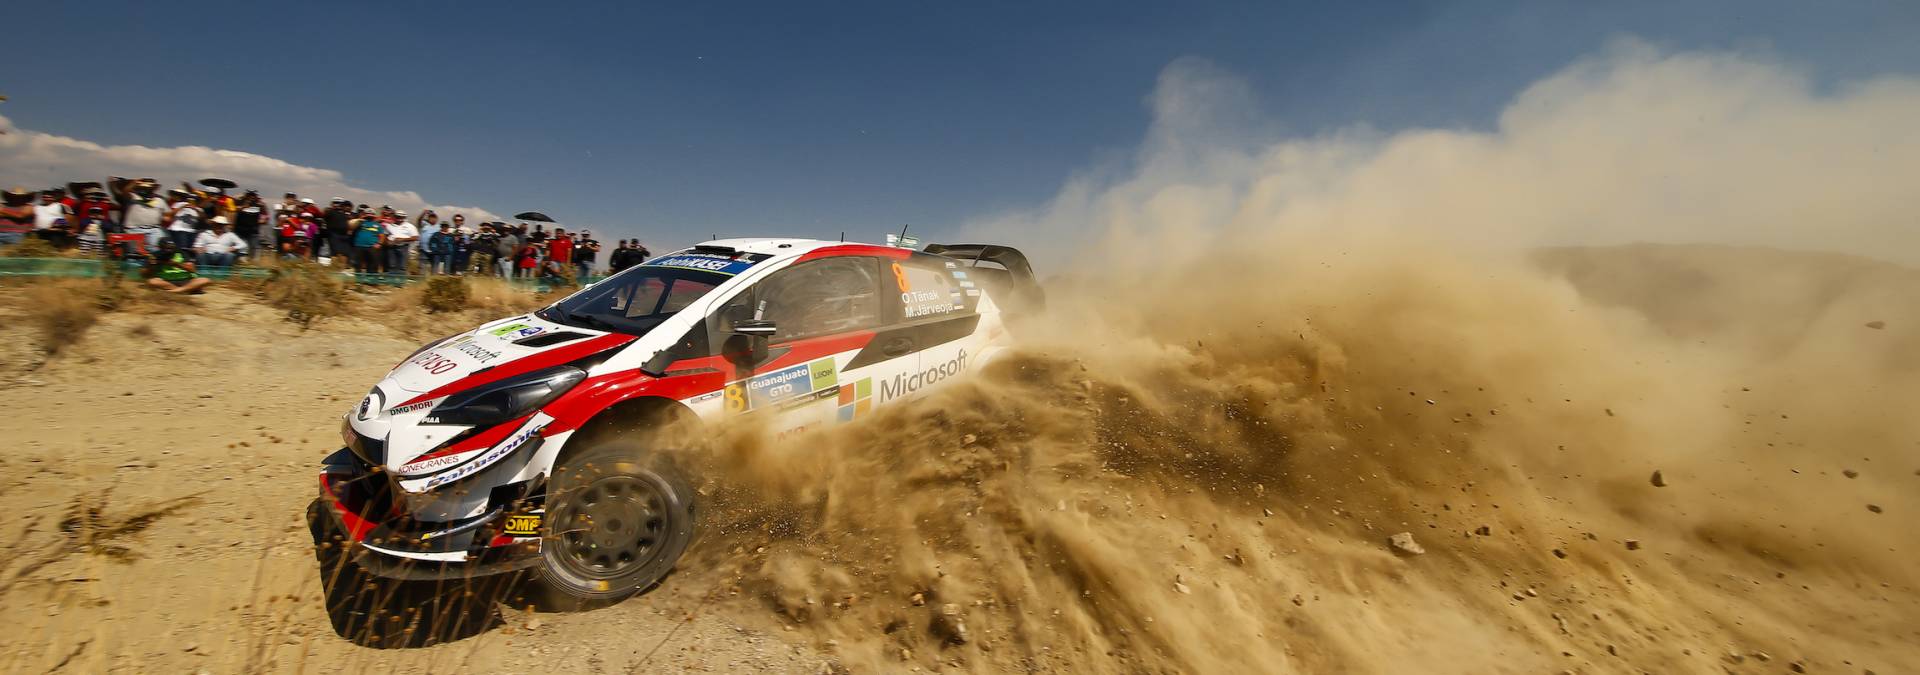 Ott Tanak trzeci raz na podium w WRC